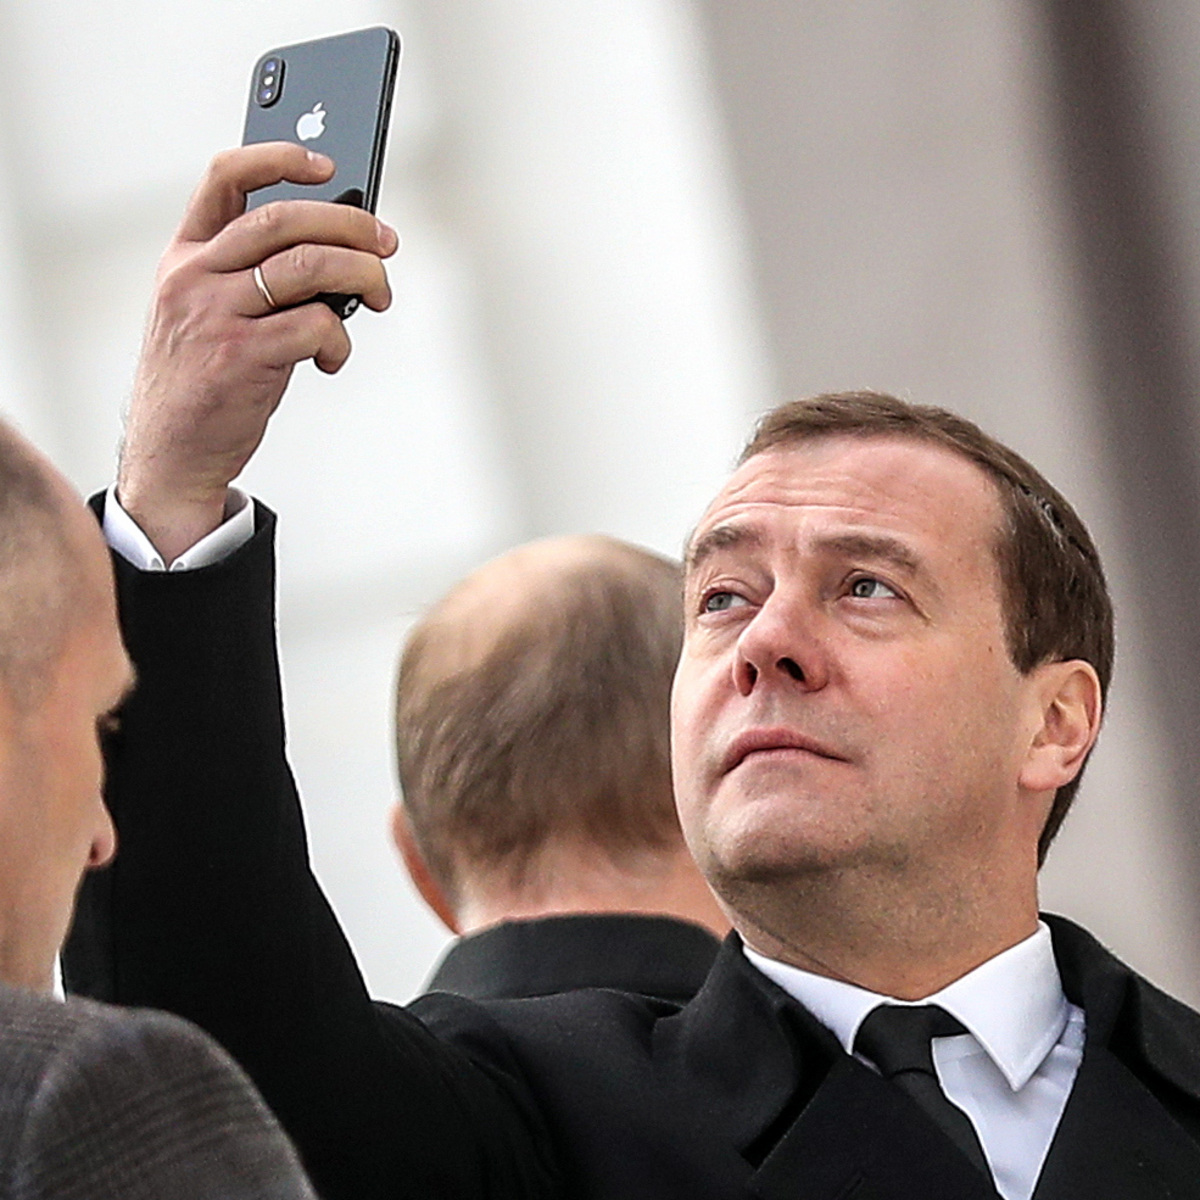 Премьер Медведев появился в монастыре с новым iPhone X. ФОТО